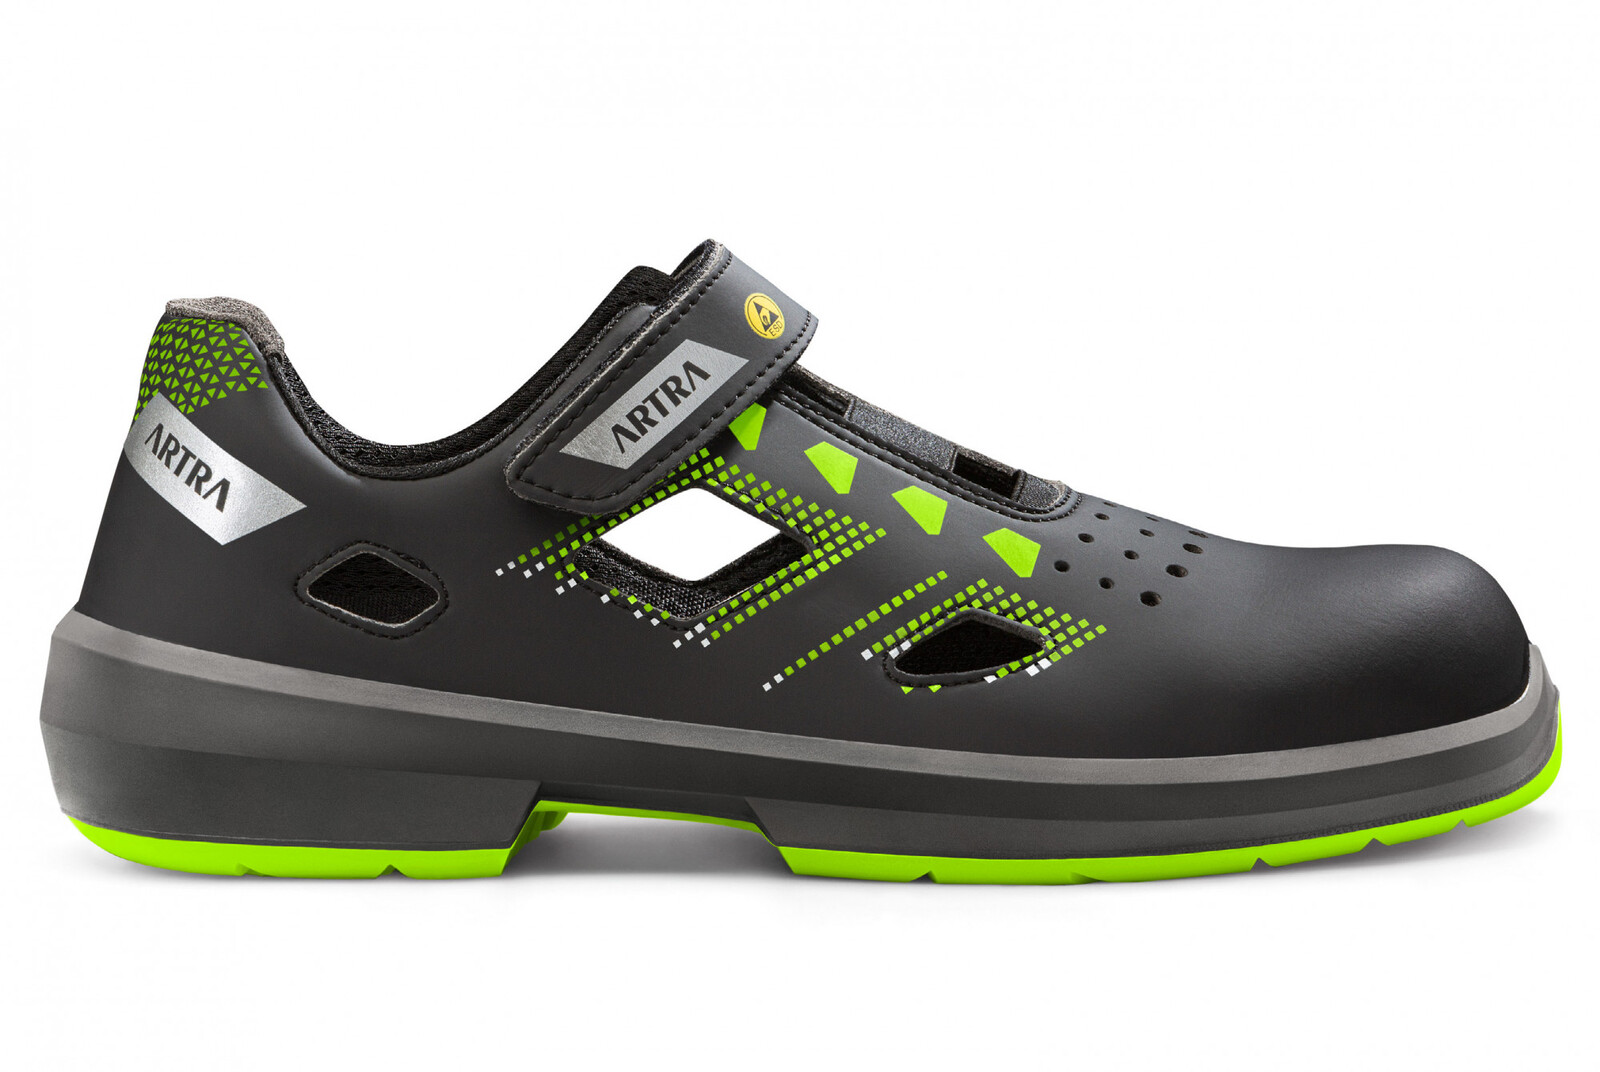 Bezpečnostné sandále Artra Arzo 805 678080 S1 SRC ESD MF - veľkosť: 37, farba: čierna/zelená